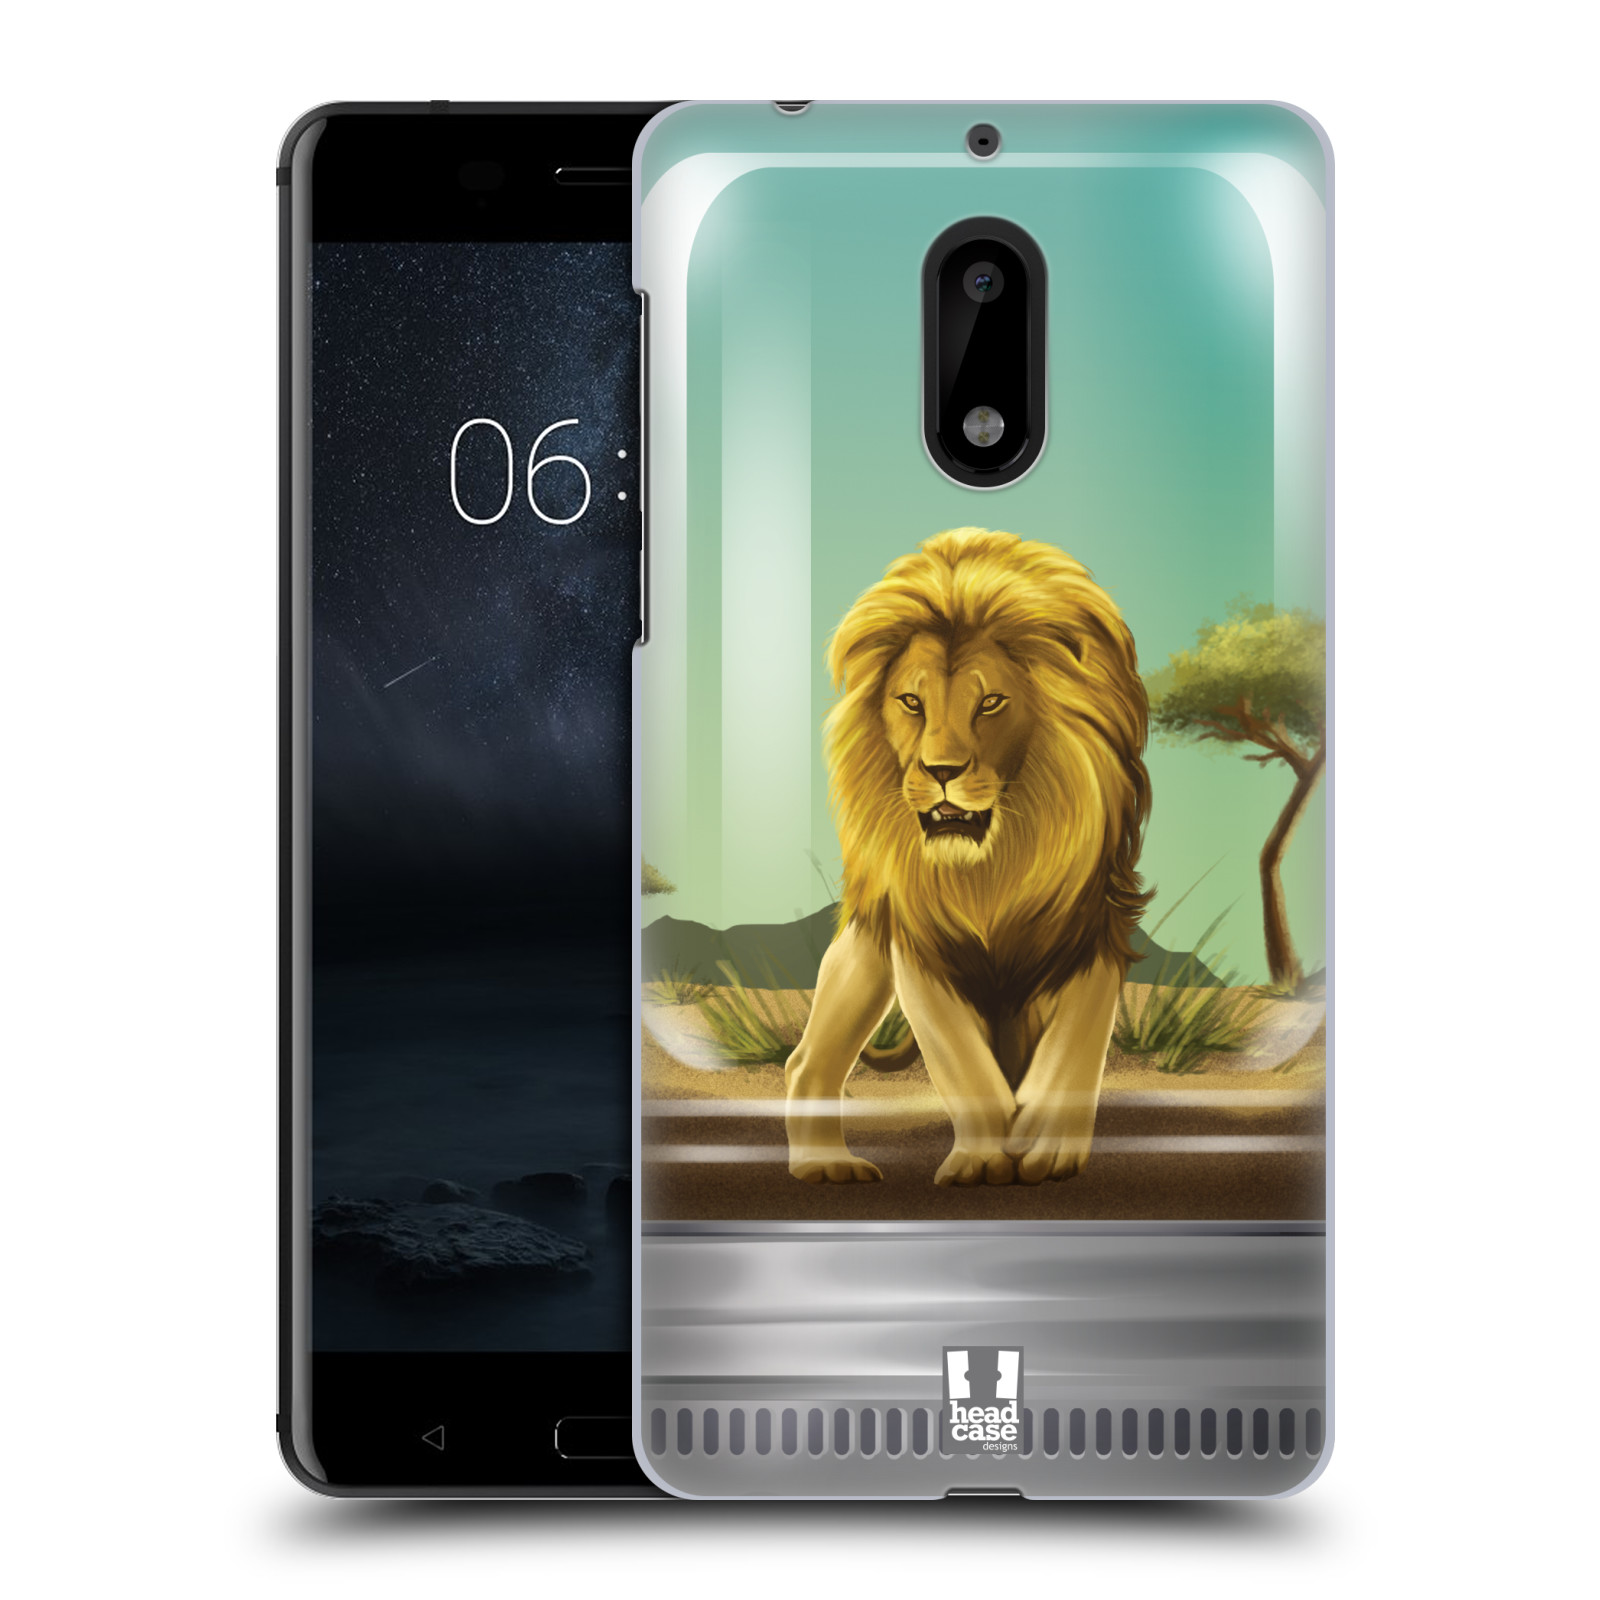 HEAD CASE plastový obal na mobil Nokia 6 vzor Zvířátka v těžítku lev